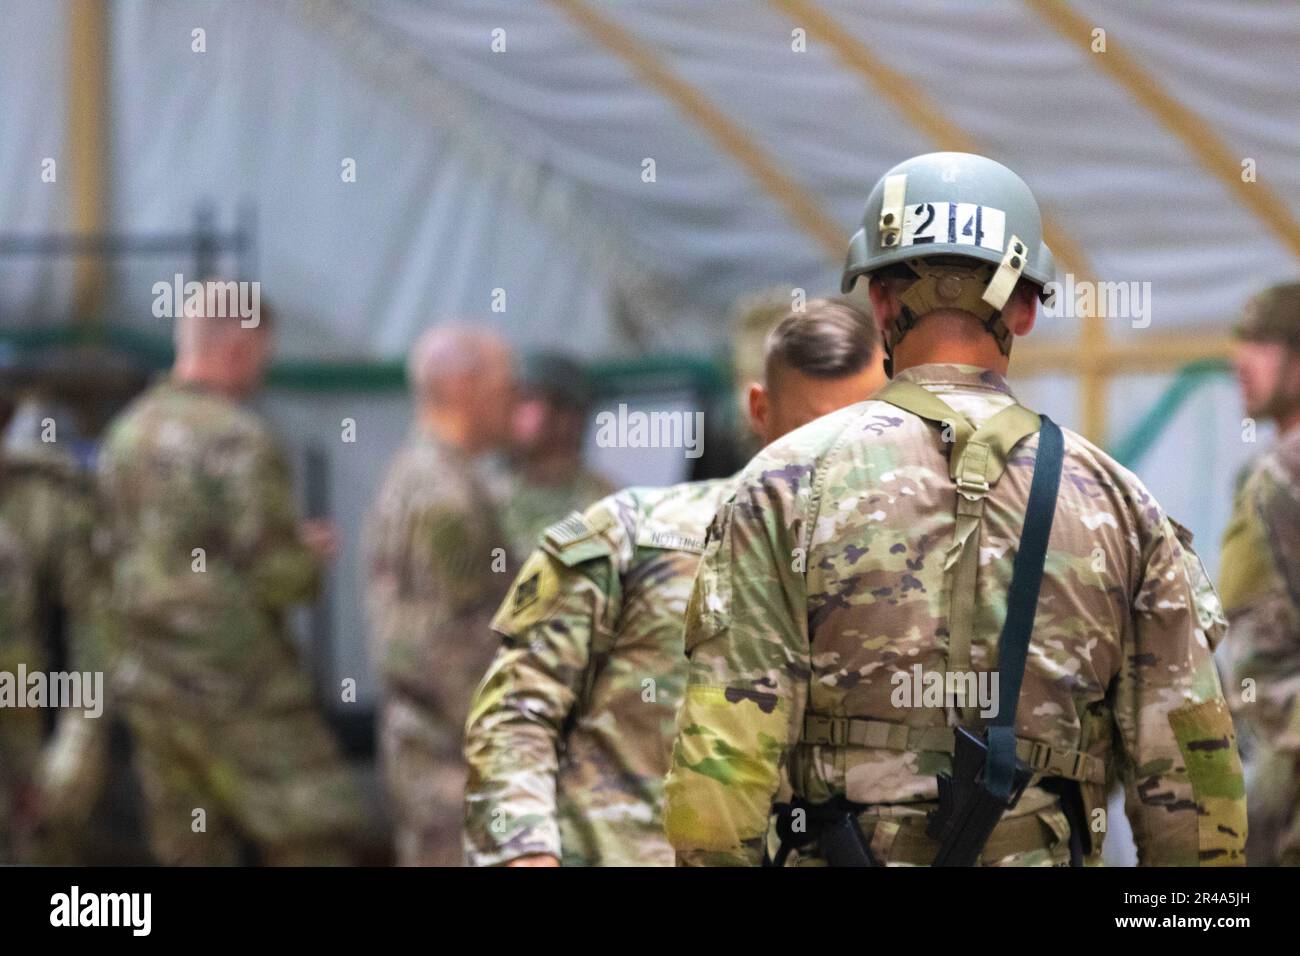 Ein Soldat überprüft die Ausrüstung eines anderen Soldaten während der Ausrüstungsinspektion, die Teil des Rappel Master Course im Camp Buehring, Kuwait ist. Während der Inspektion werden der Abseilsitz und die Ausrüstung auf Mängel untersucht, die zu schweren oder tödlichen Verletzungen des Abseilers führen können. Stockfoto